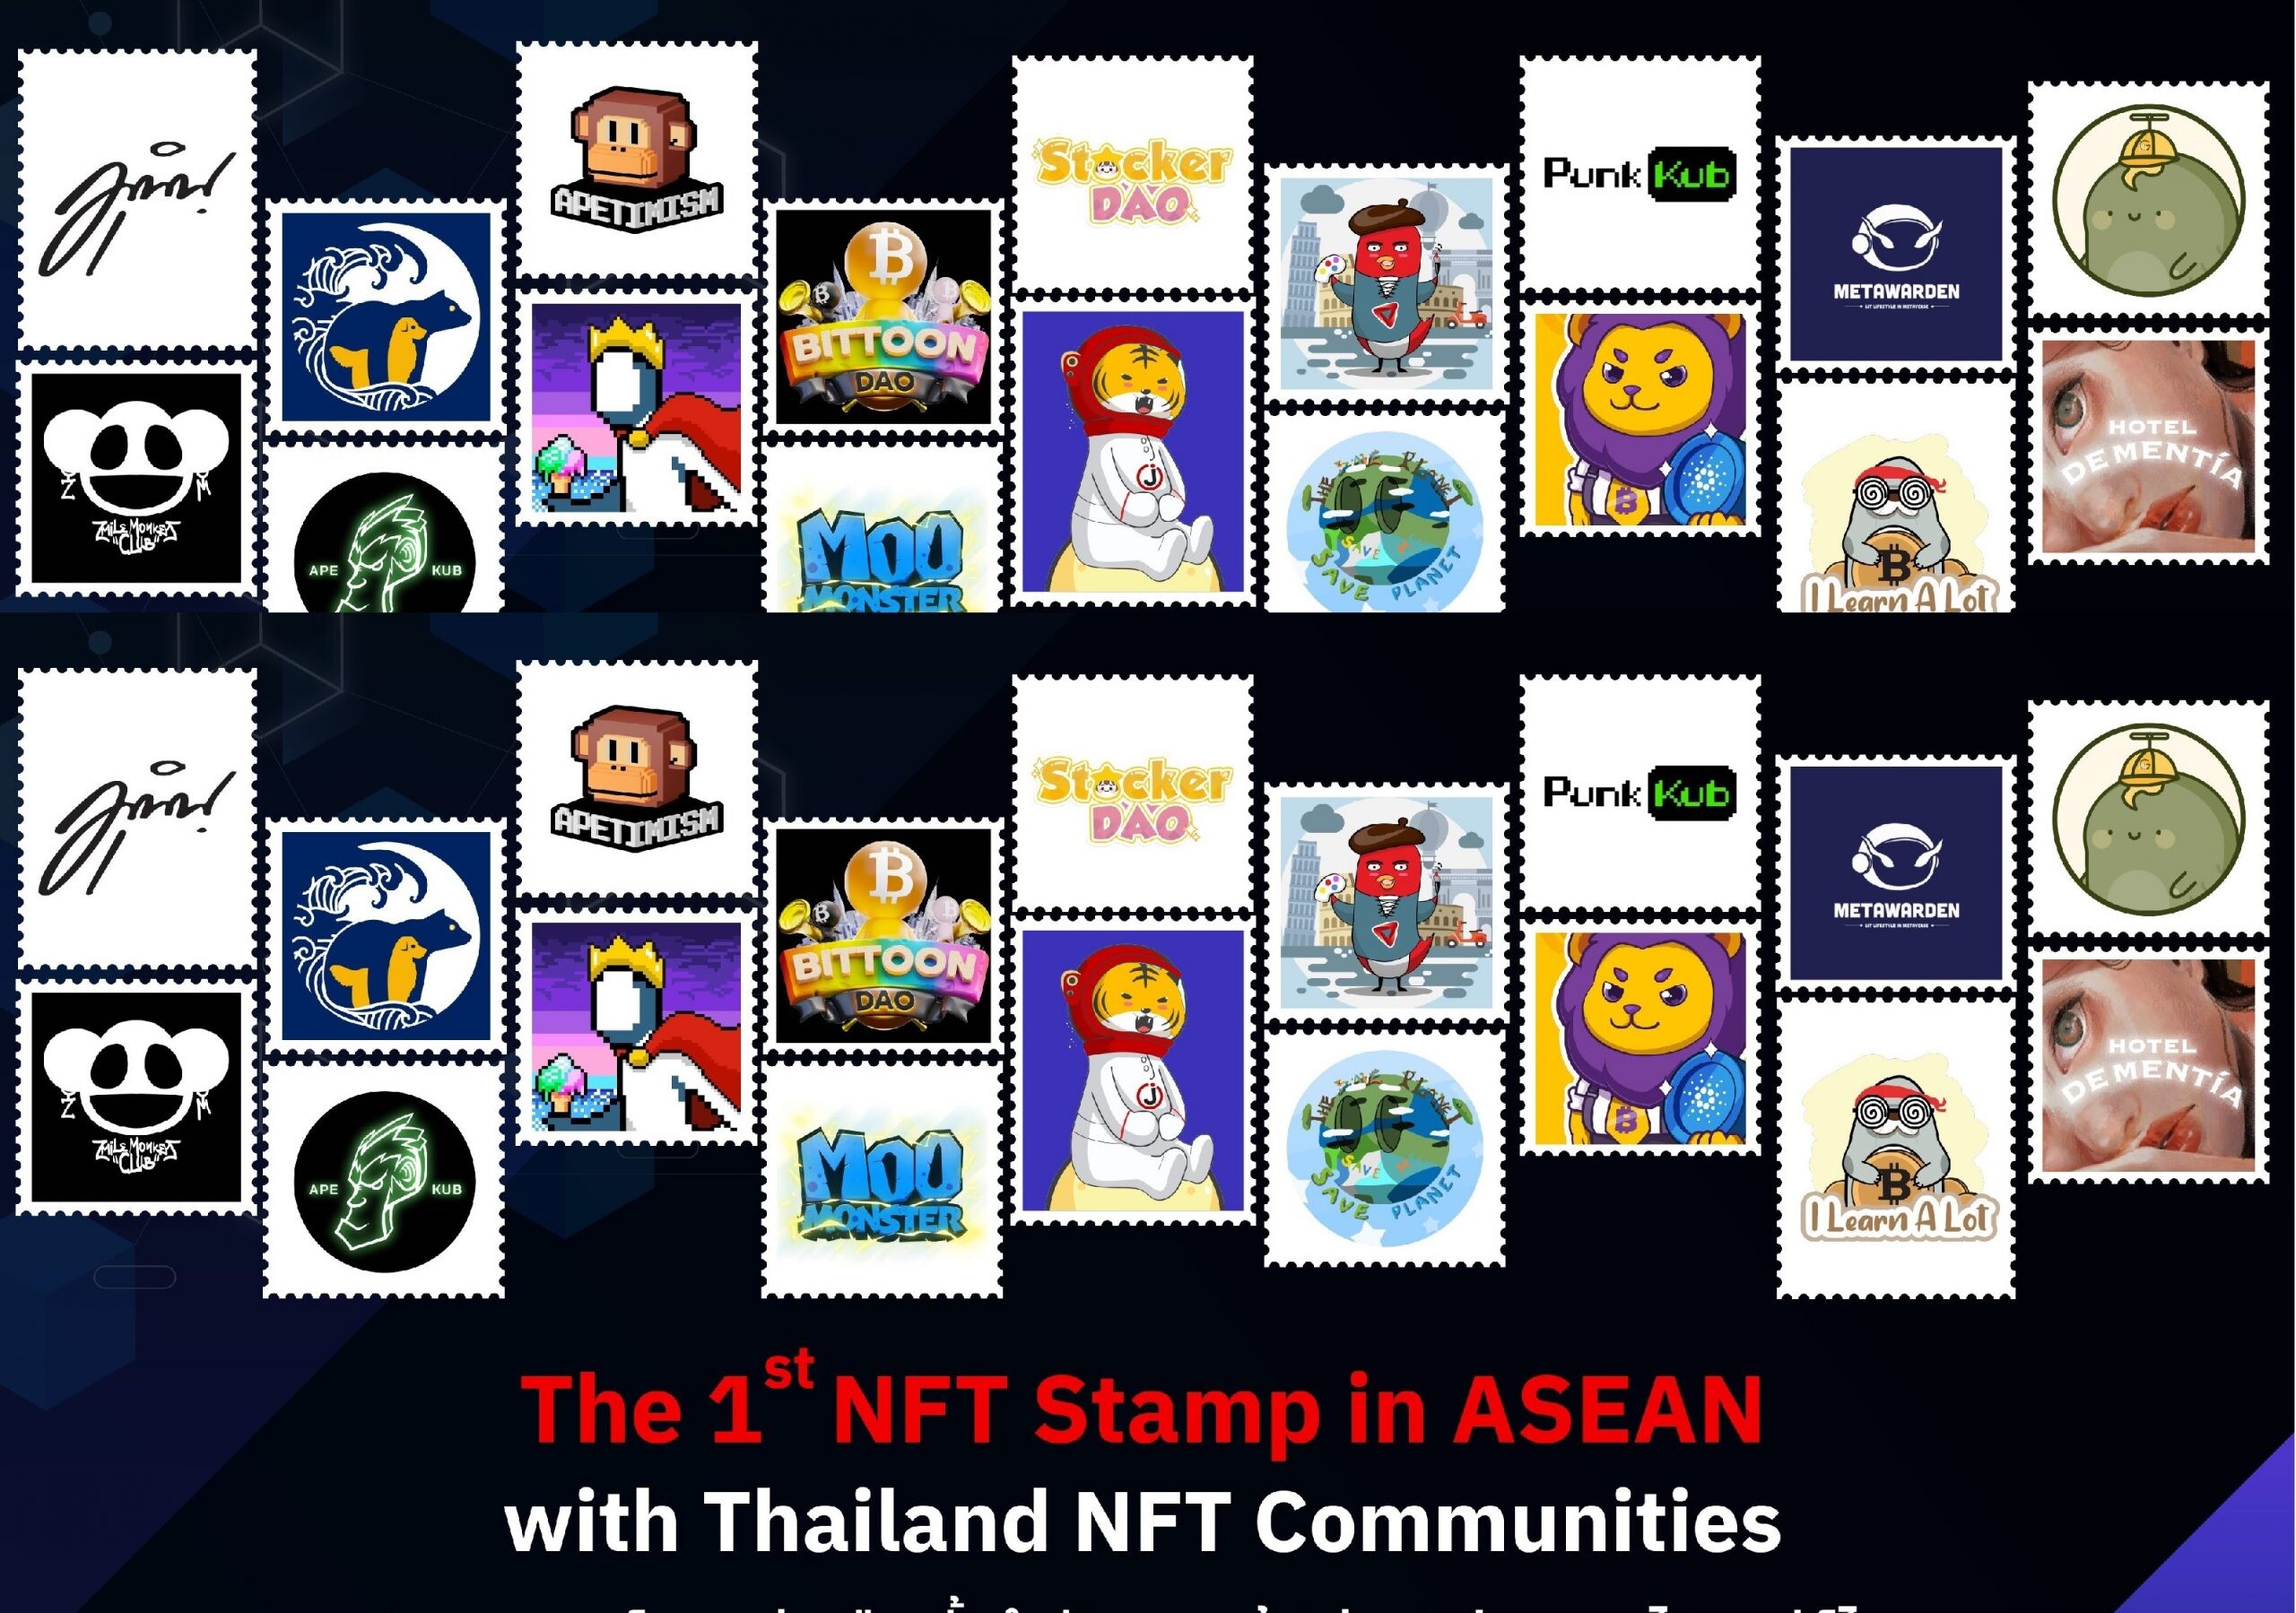 เจ เวนเจอร์ส นำ JNFT จับมือคอมมูนิตี้ NFT ประเทศไทย ร่วมสร้างสรรค์ "แสตมป์ NFT แรกของอาเซียน" ของไปรษณีย์ไทย